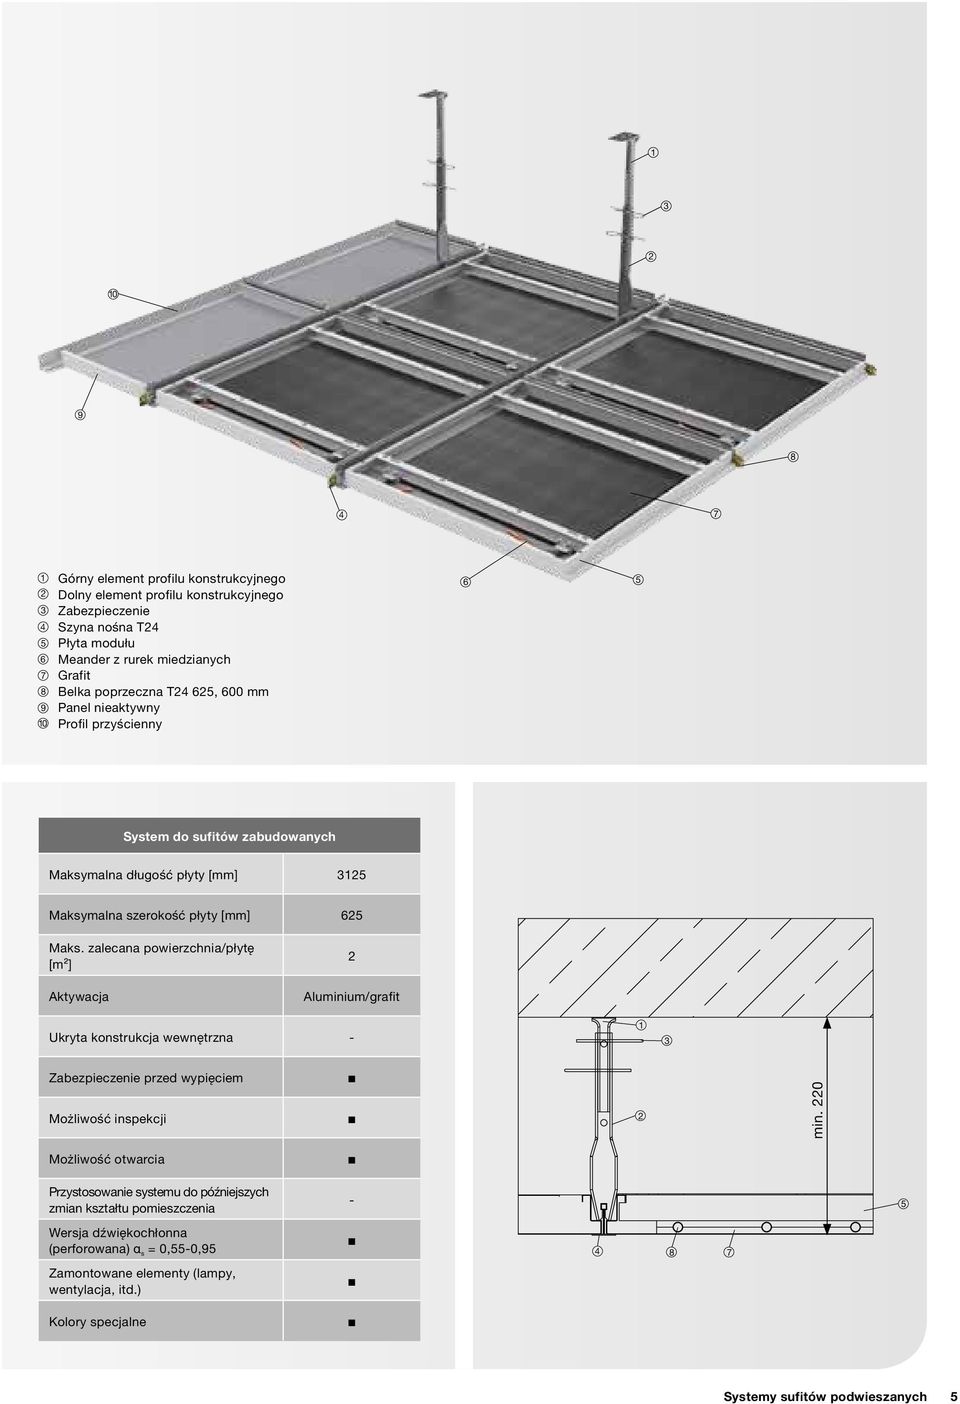 zalecana powierzchnia/płytę [m²] Aktywacja 2 Aluminium/grafit Ukryta konstrukcja wewnętrzna - 1 3 Zabezpieczenie przed wypięciem Możliwość inspekcji 2 min.